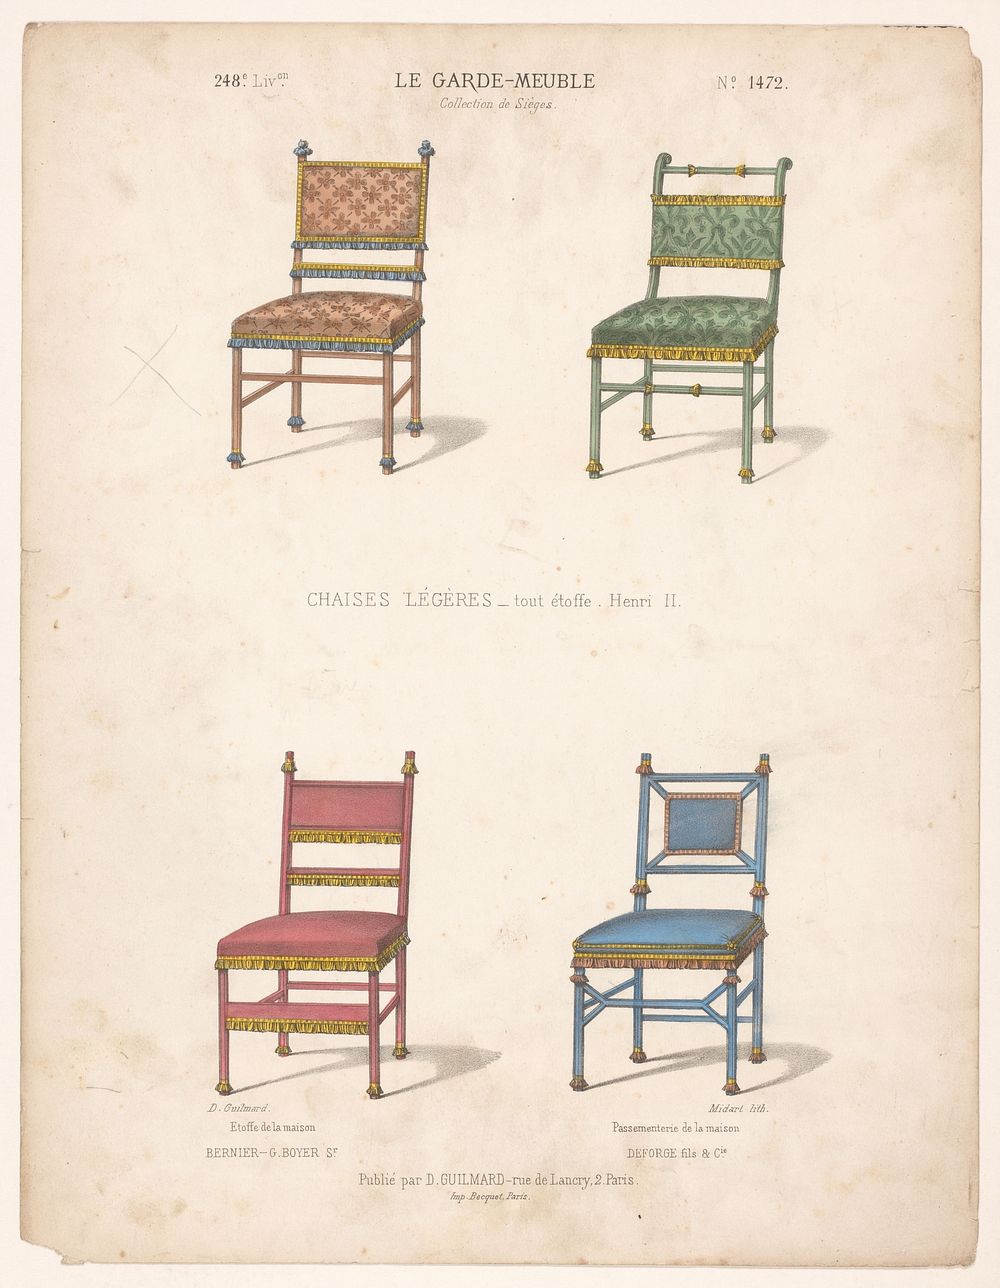 Vier stoelen (1839 - 1885) by Midart, Becquet and Désiré Guilmard